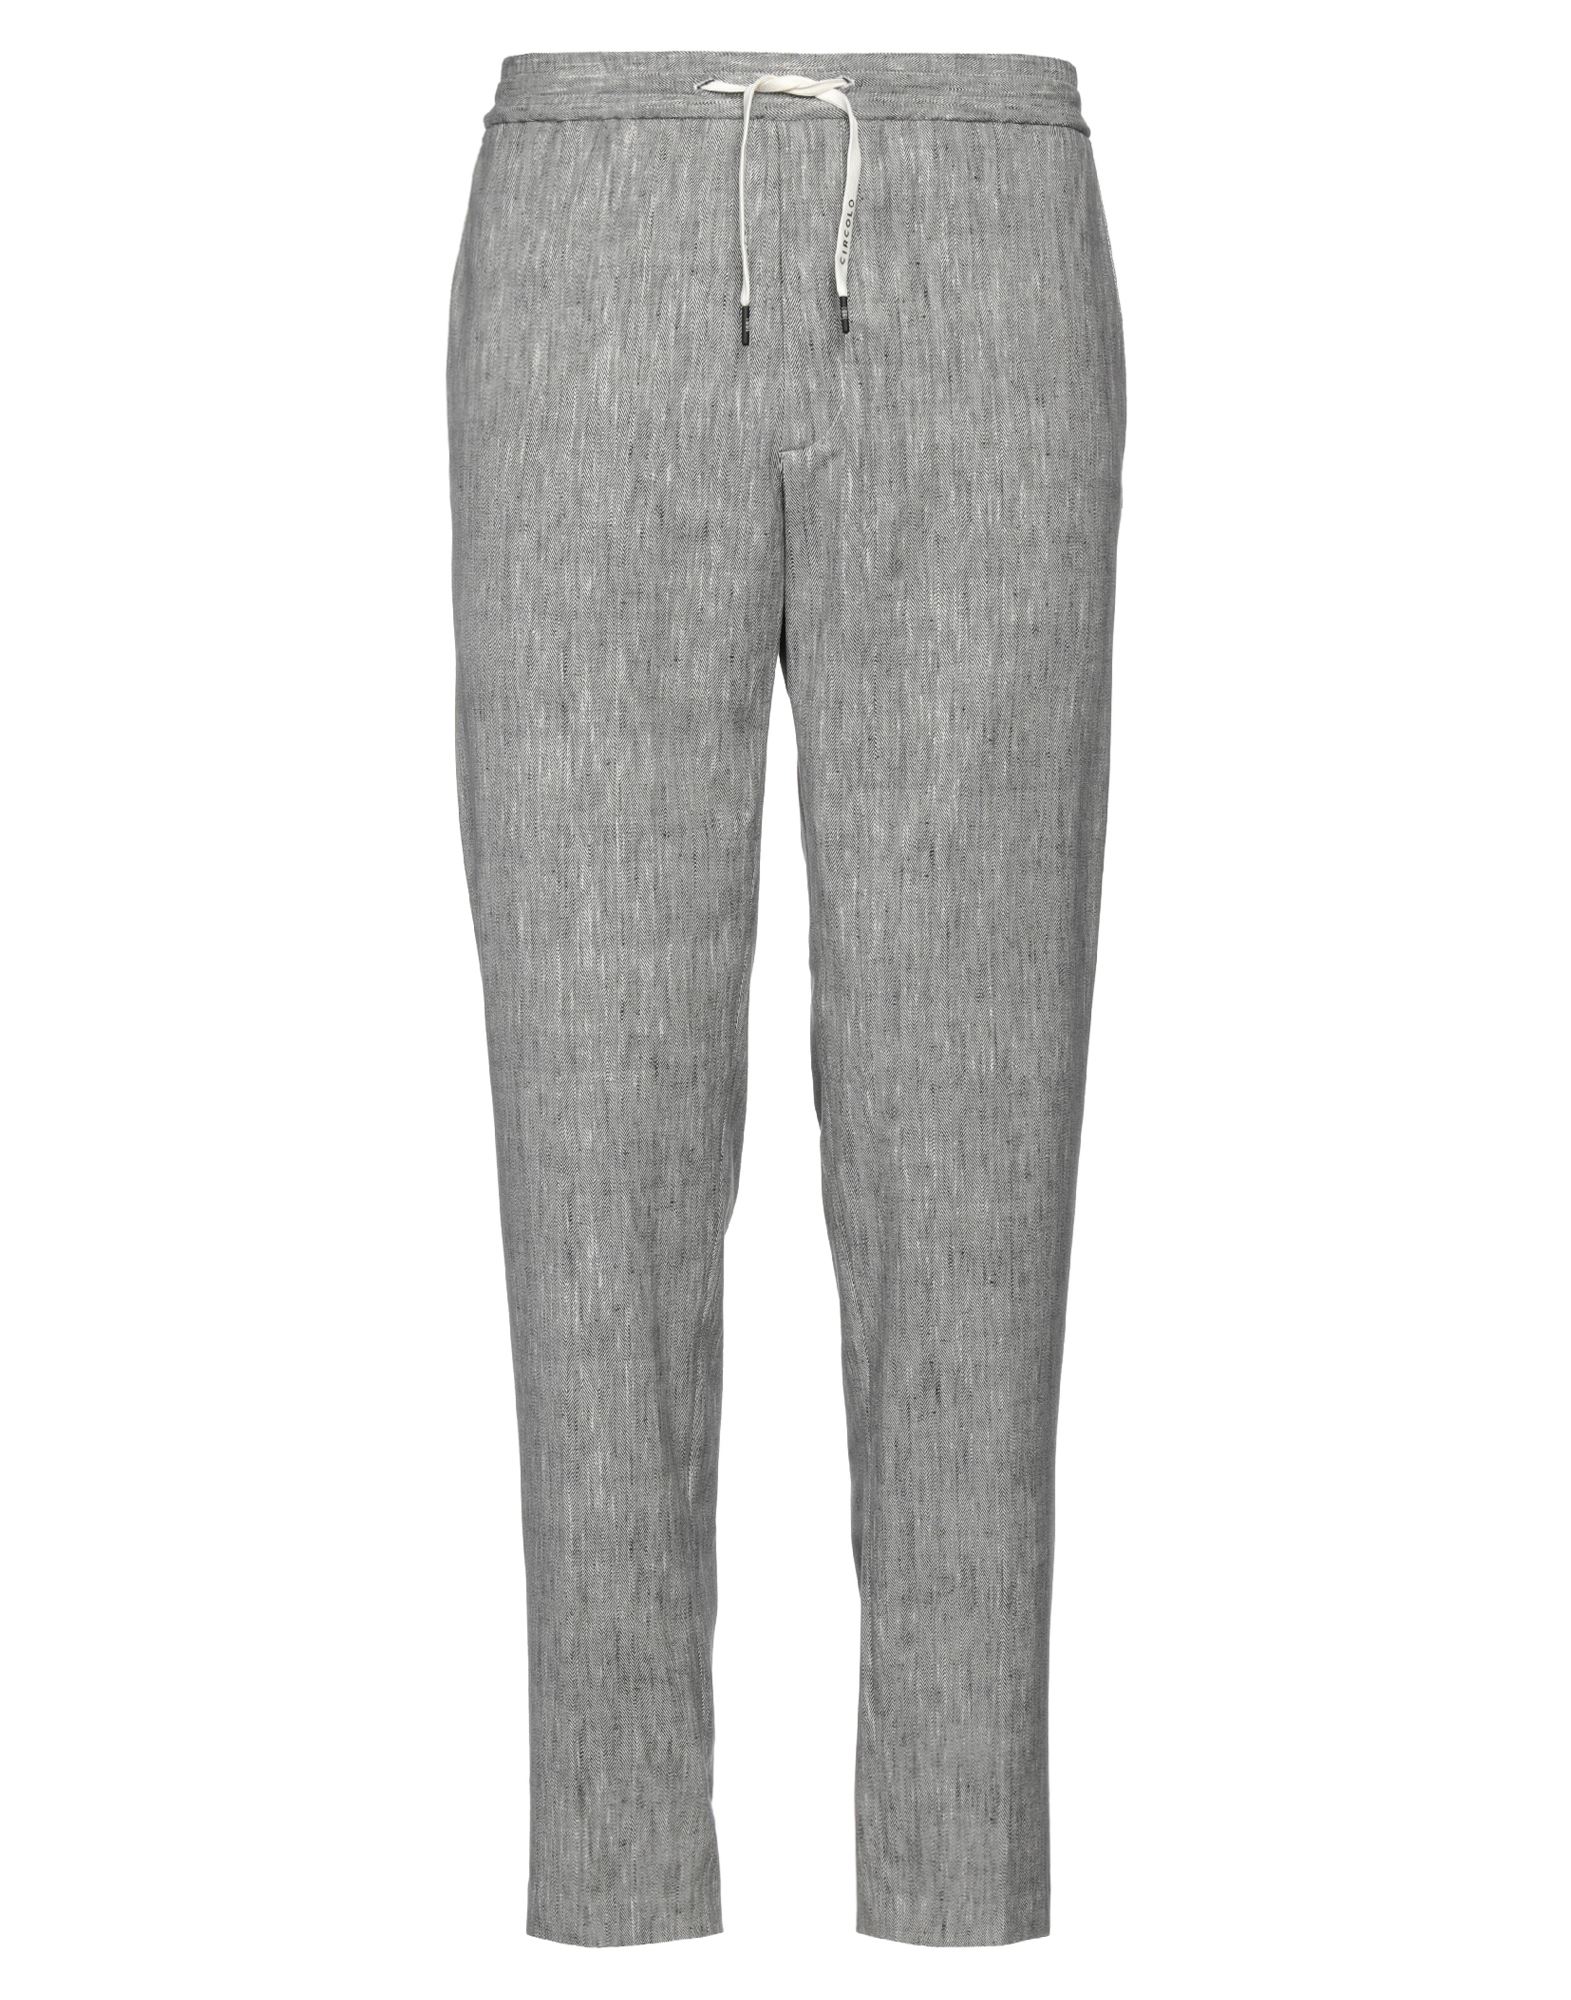 Shop Circolo 1901 Man Pants Black Size 36 Cotton, Elastane